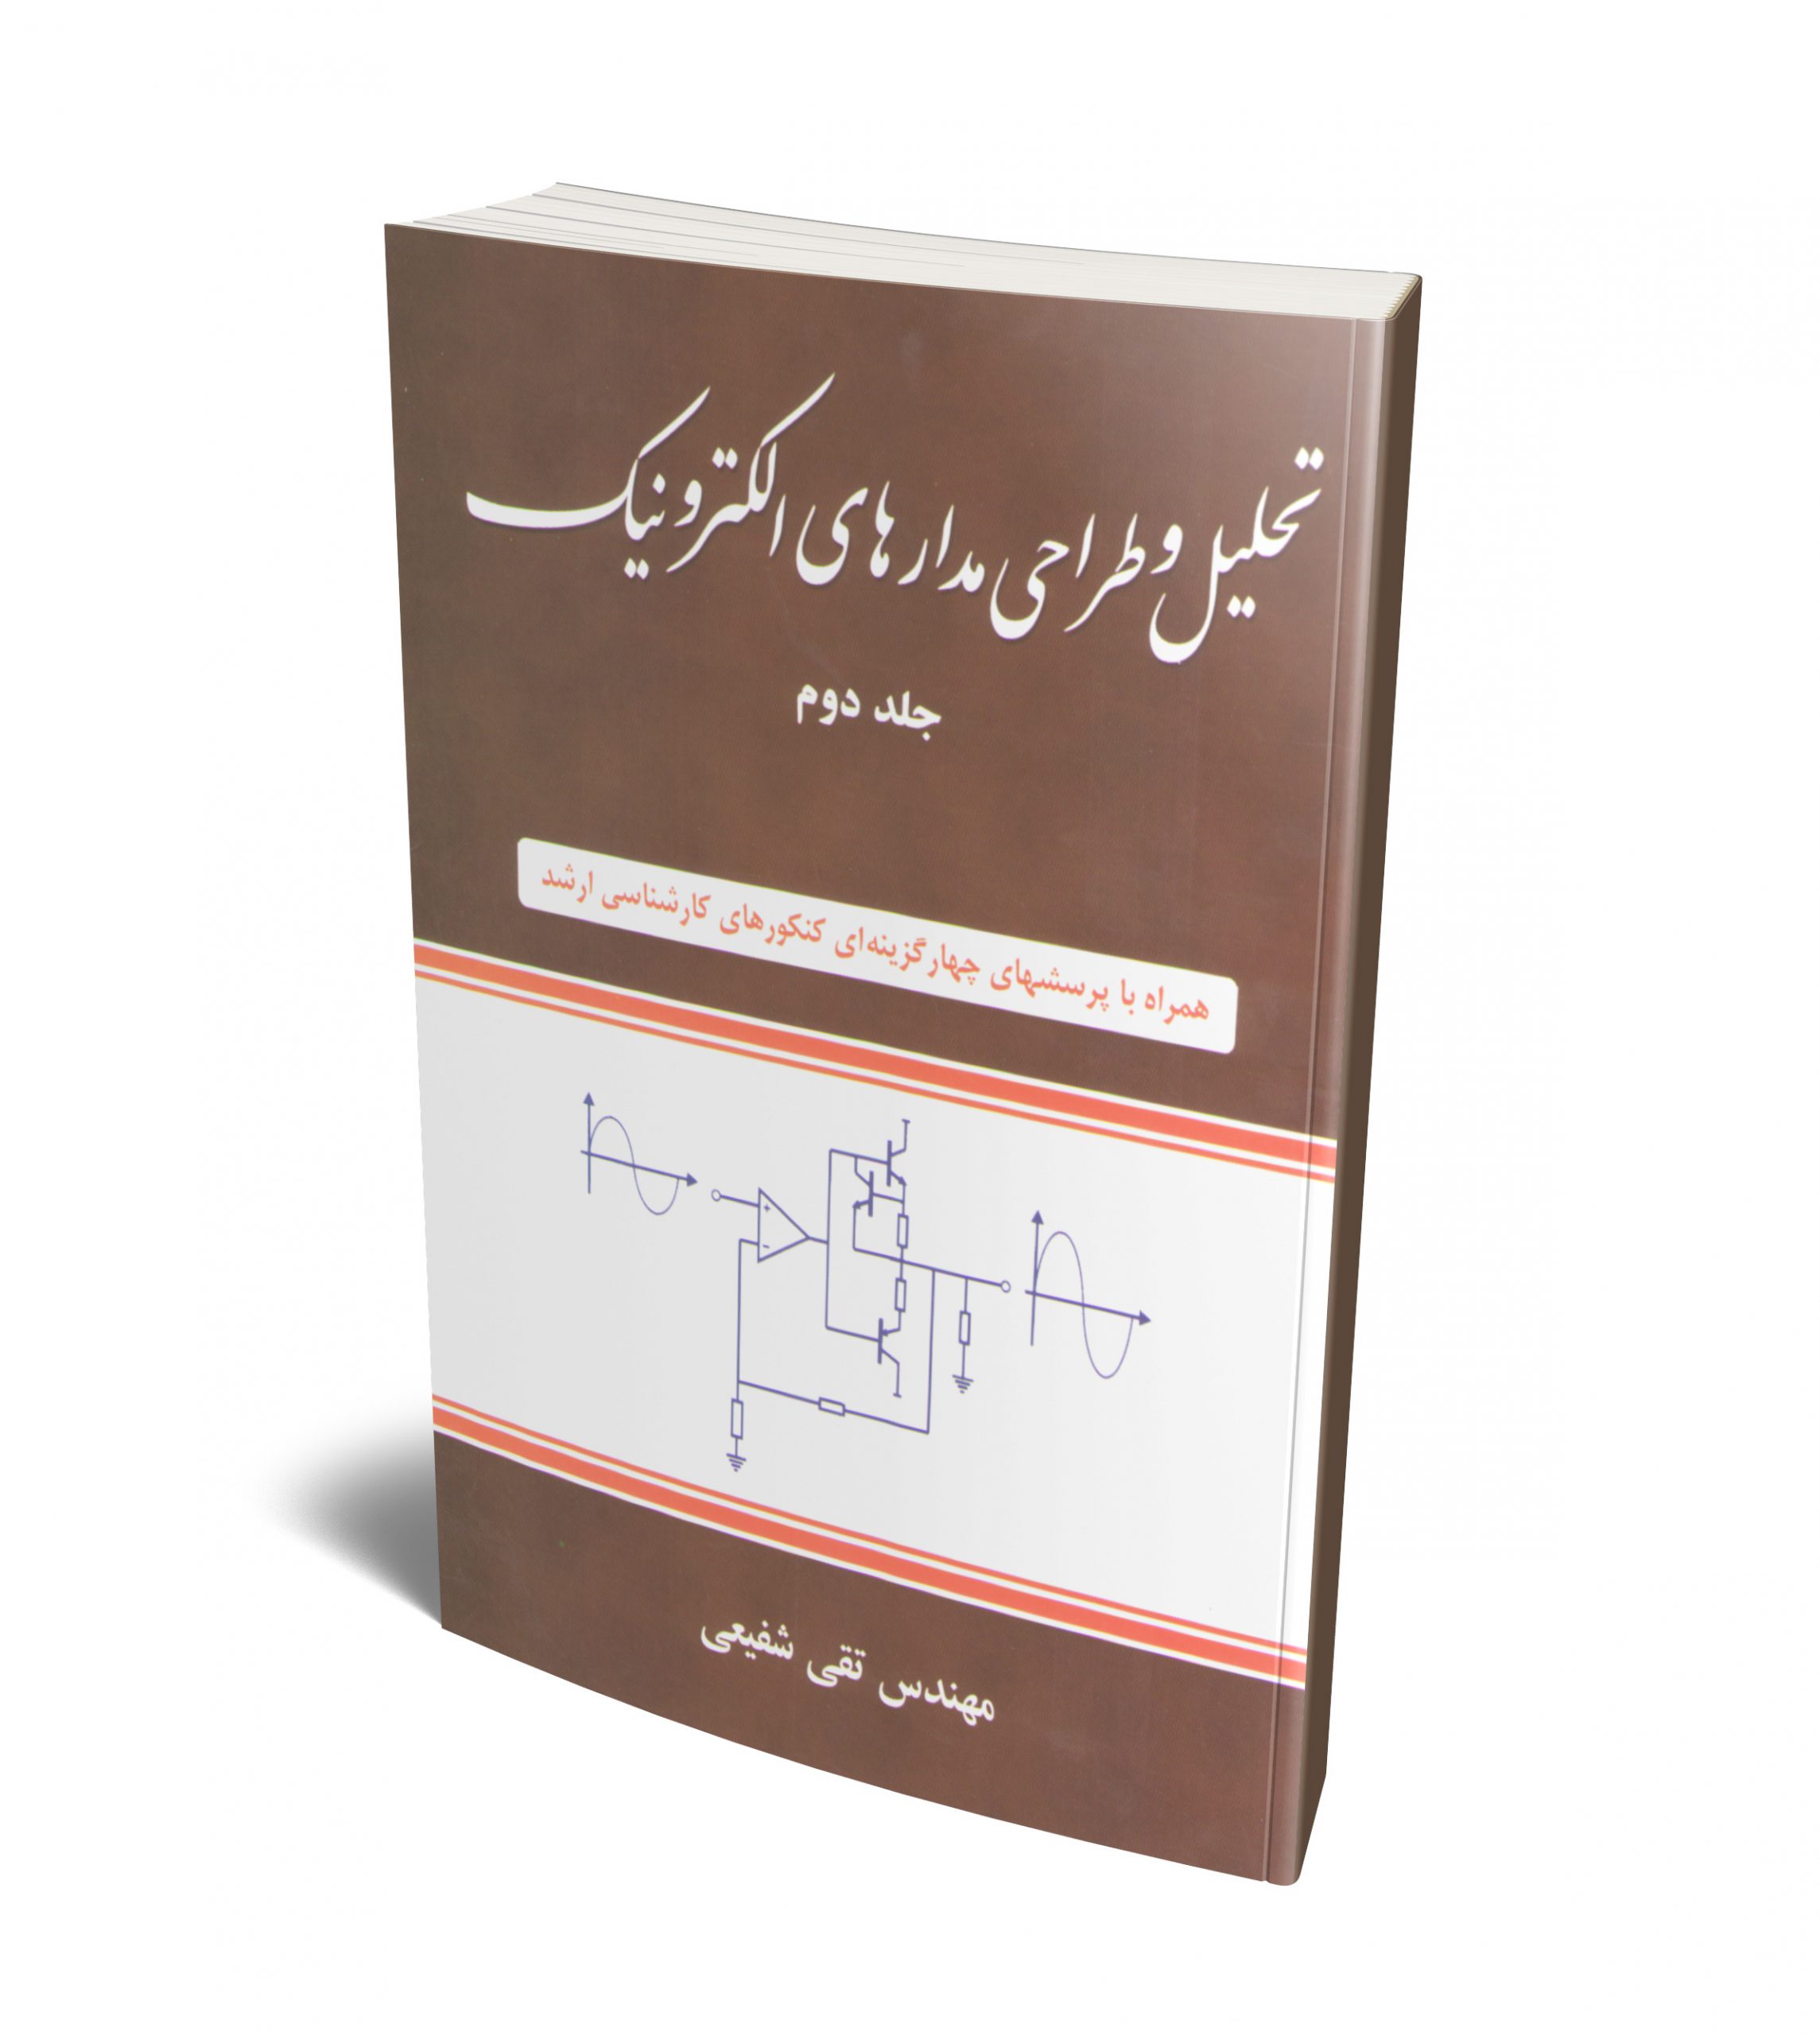 تحلیل و طراحی مدارهای الکترونیک جلد دوم(شیخ بهایی)